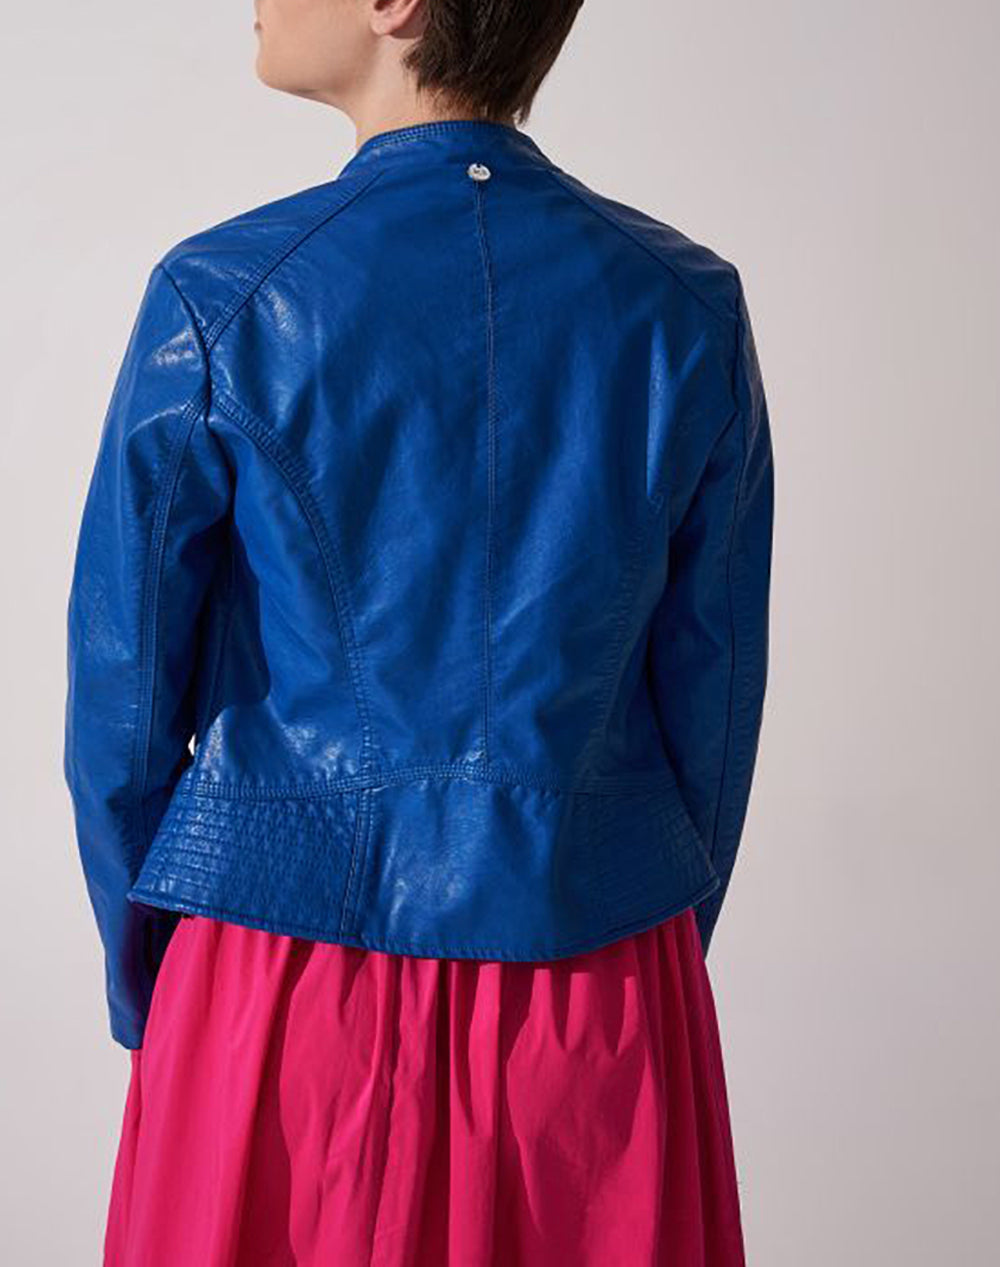 ALE - Xhaketë lëkure në dy ngjyra, blu dhe të zezë.